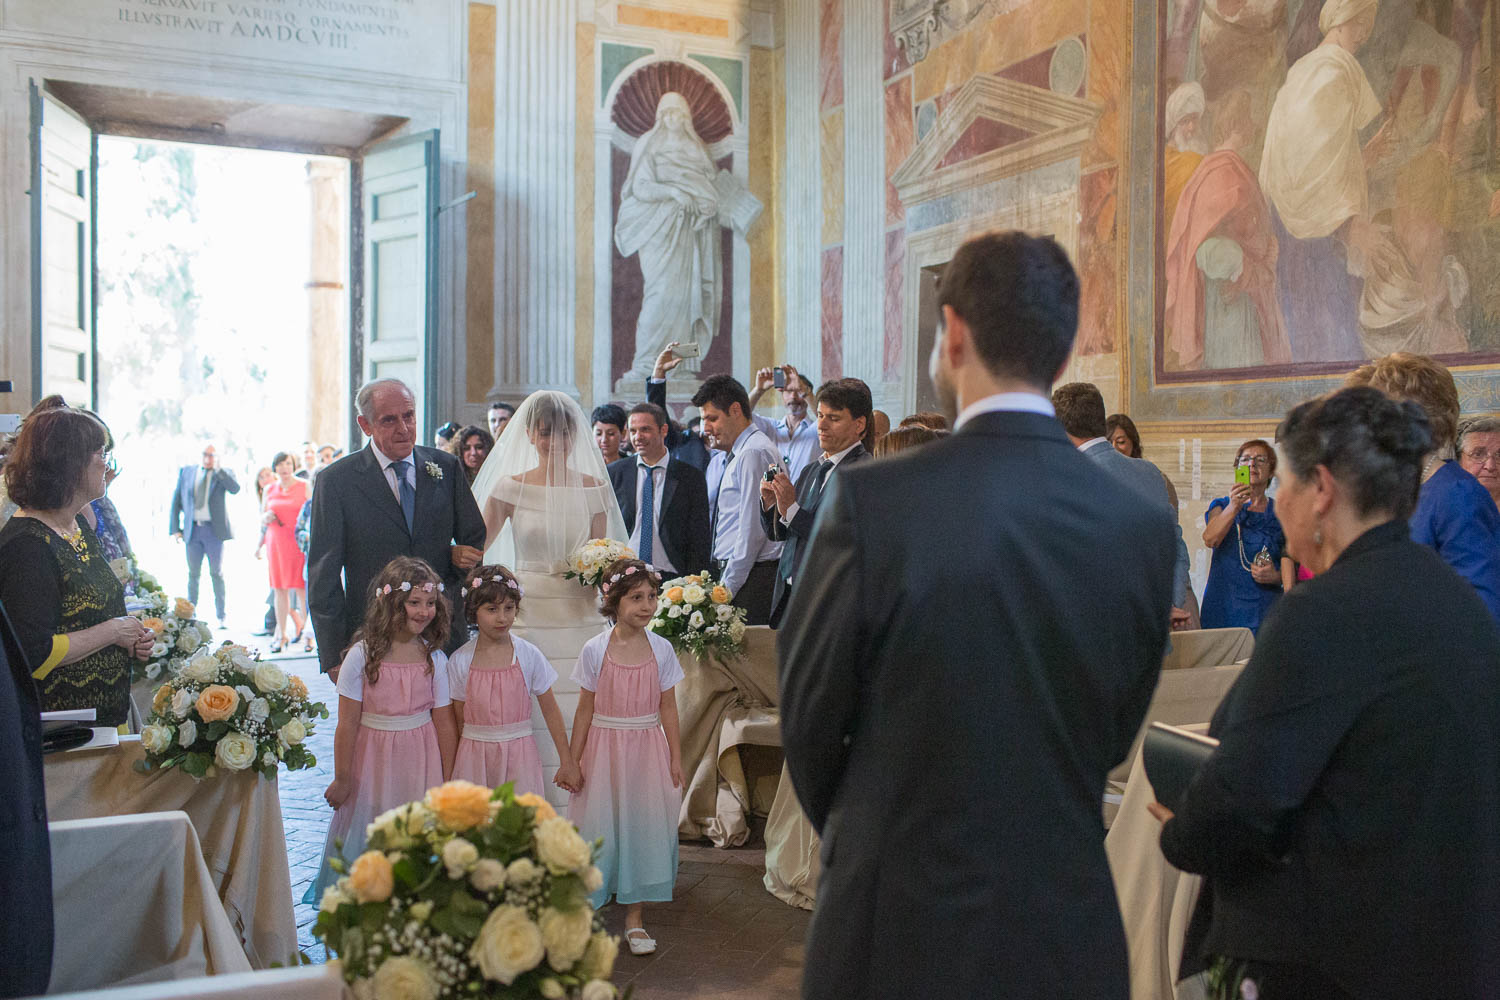 nf-Fotografo-Matrimonio-intimo-Roma-Sant-Andrea-al-Celio